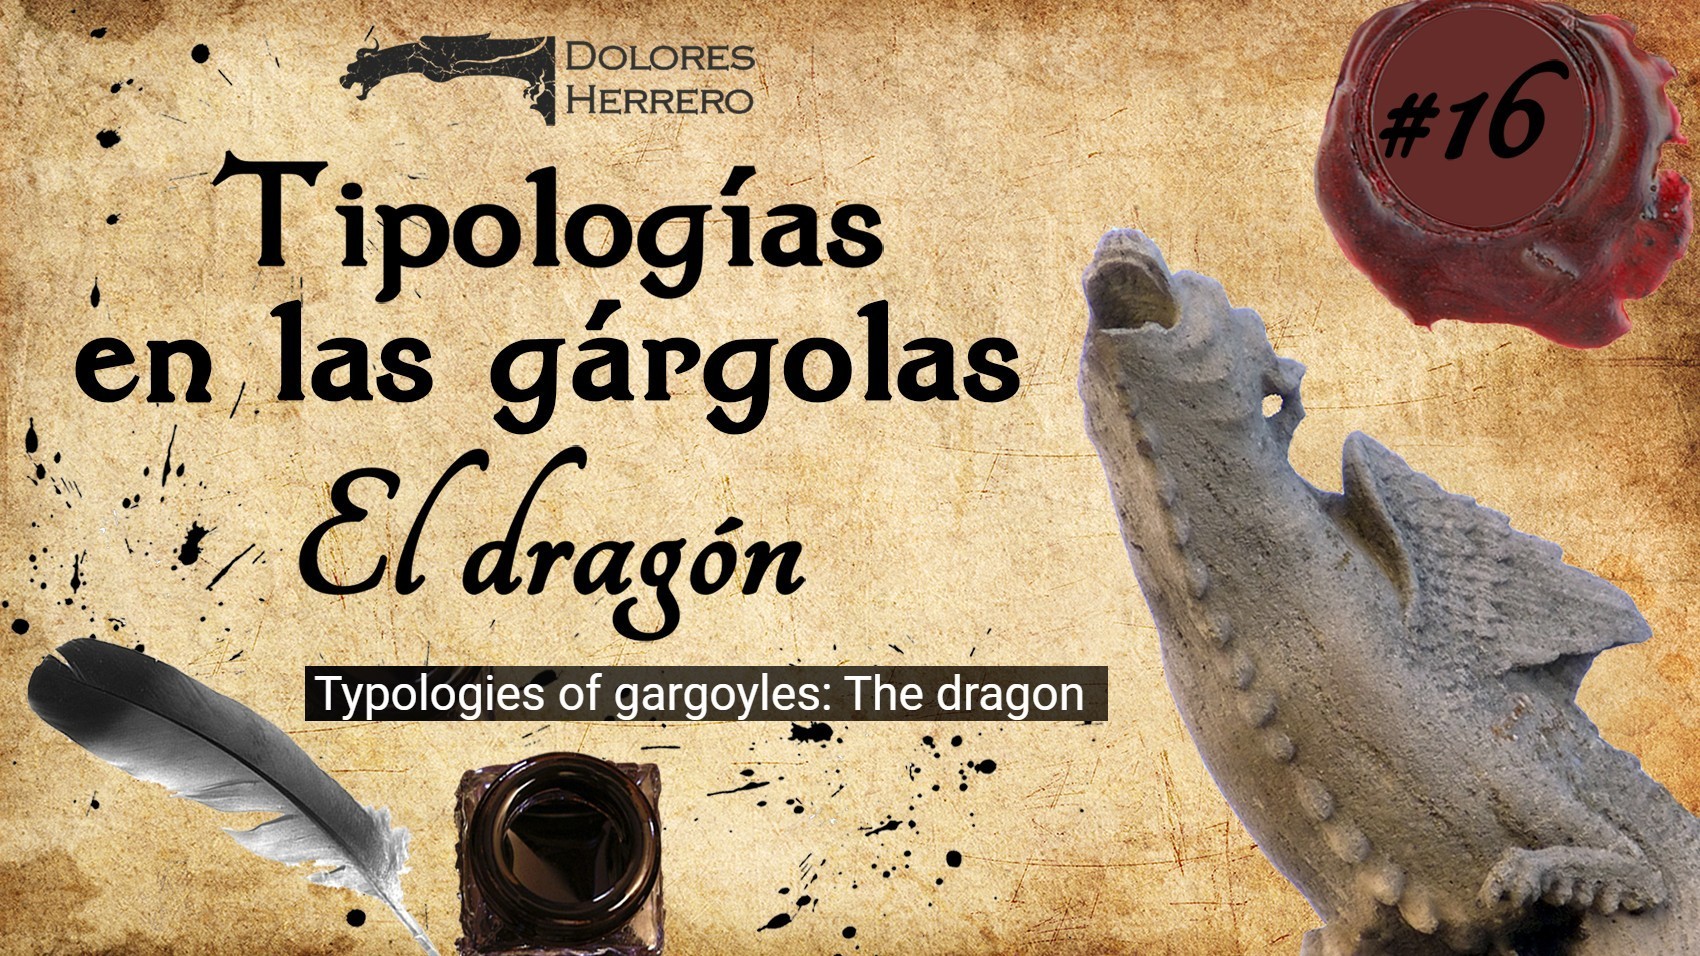 #16 Tipologías: El dragón